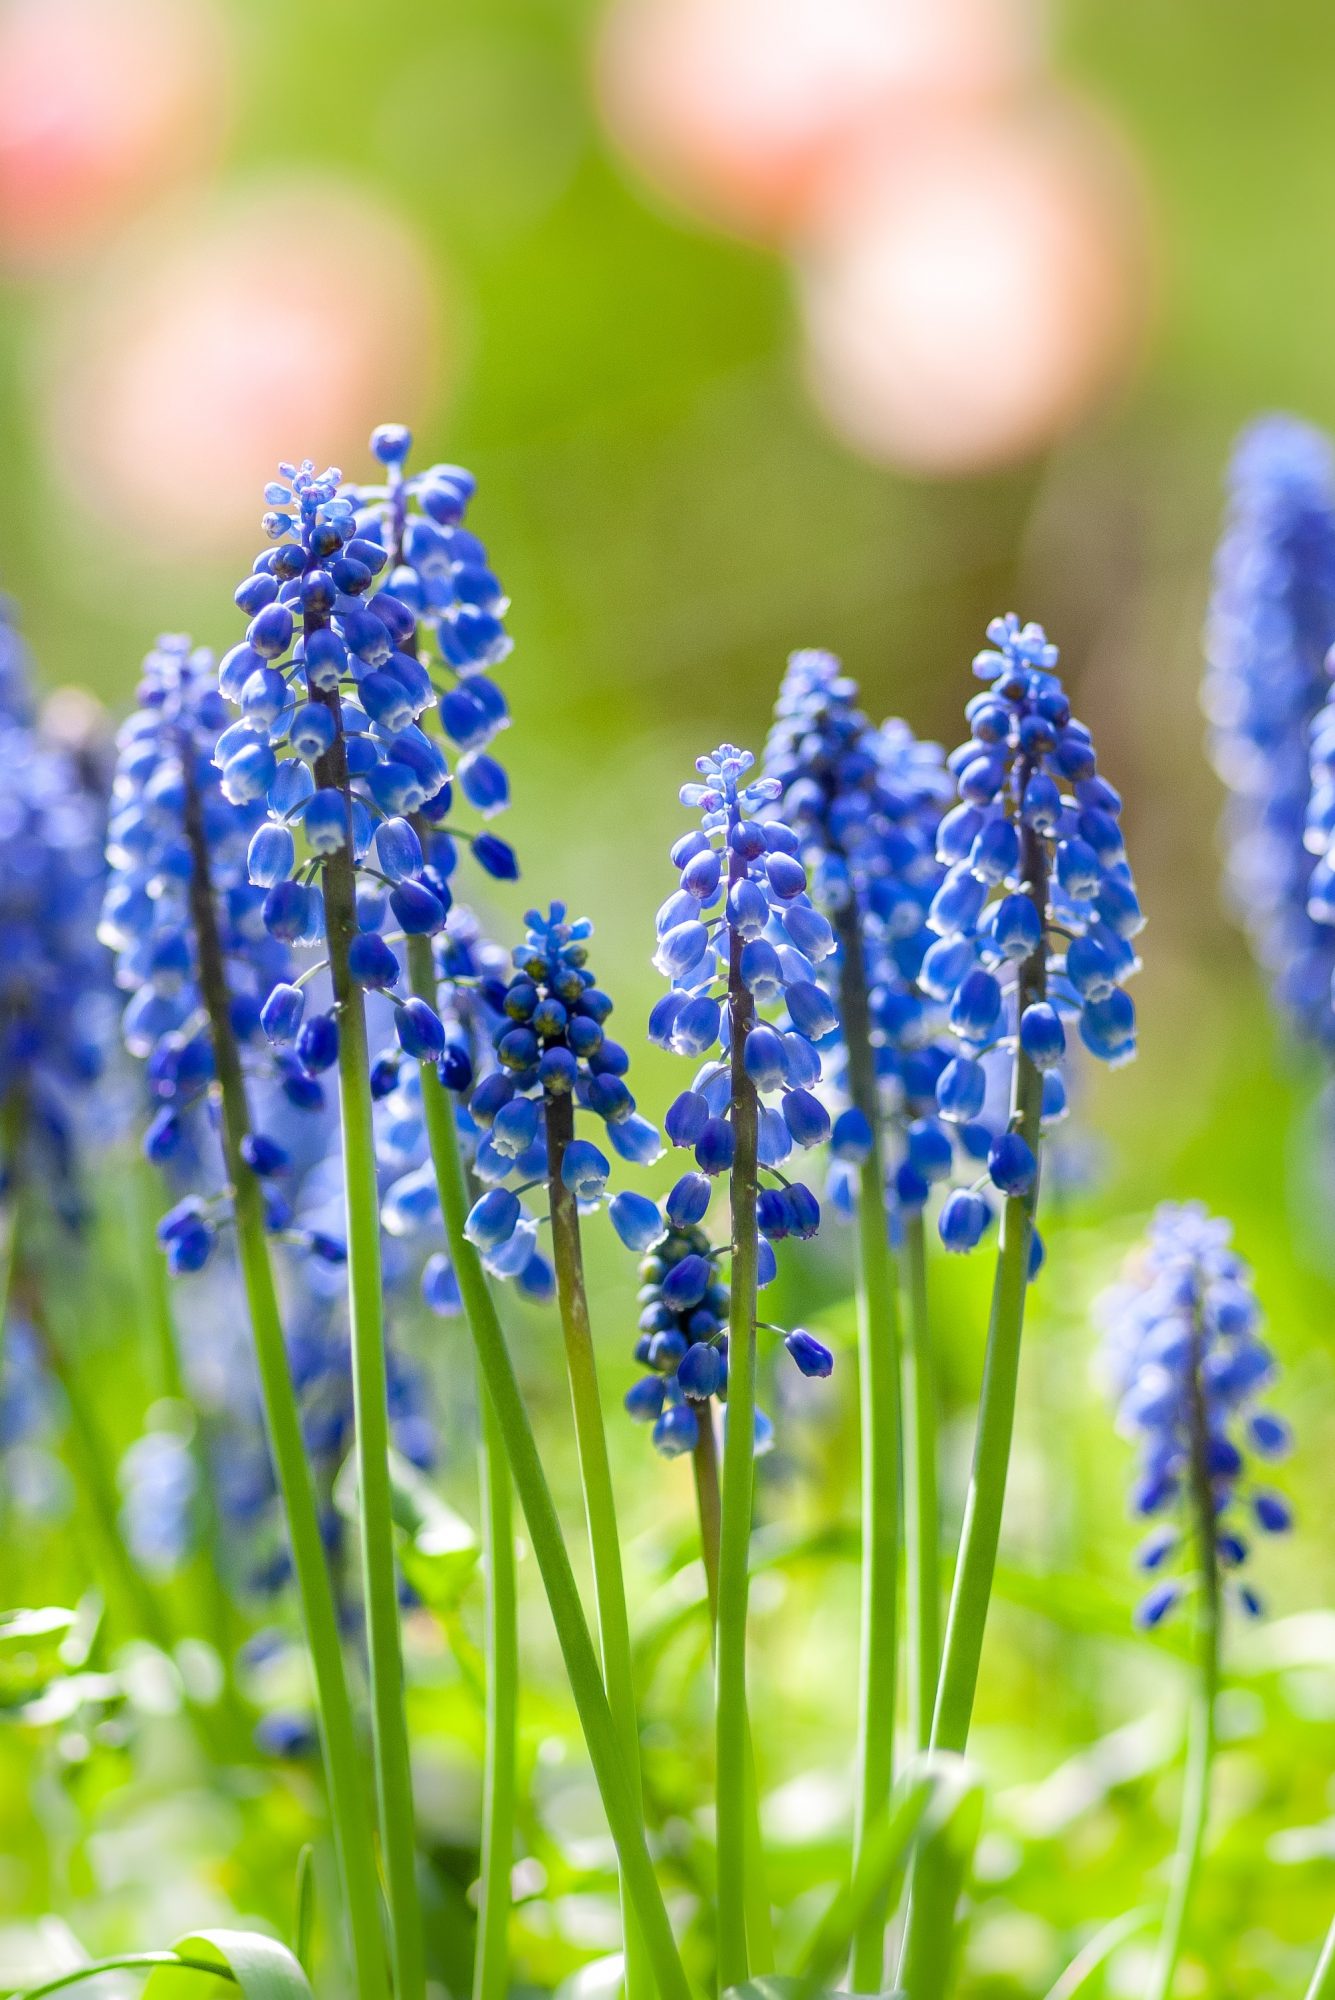 ムスカリはぶどうのような形をした青い小花を咲かせる多年草。冬の寒さにも夏の暑さにも強い、ほったらかしで毎年咲く花として寄せ植えにおすすめです。キッチンやダイニングテーブルなどに、ジャムの瓶などにたっぷりのムスカリをサッと生けるだけで、素敵なインテリアになりますよ。